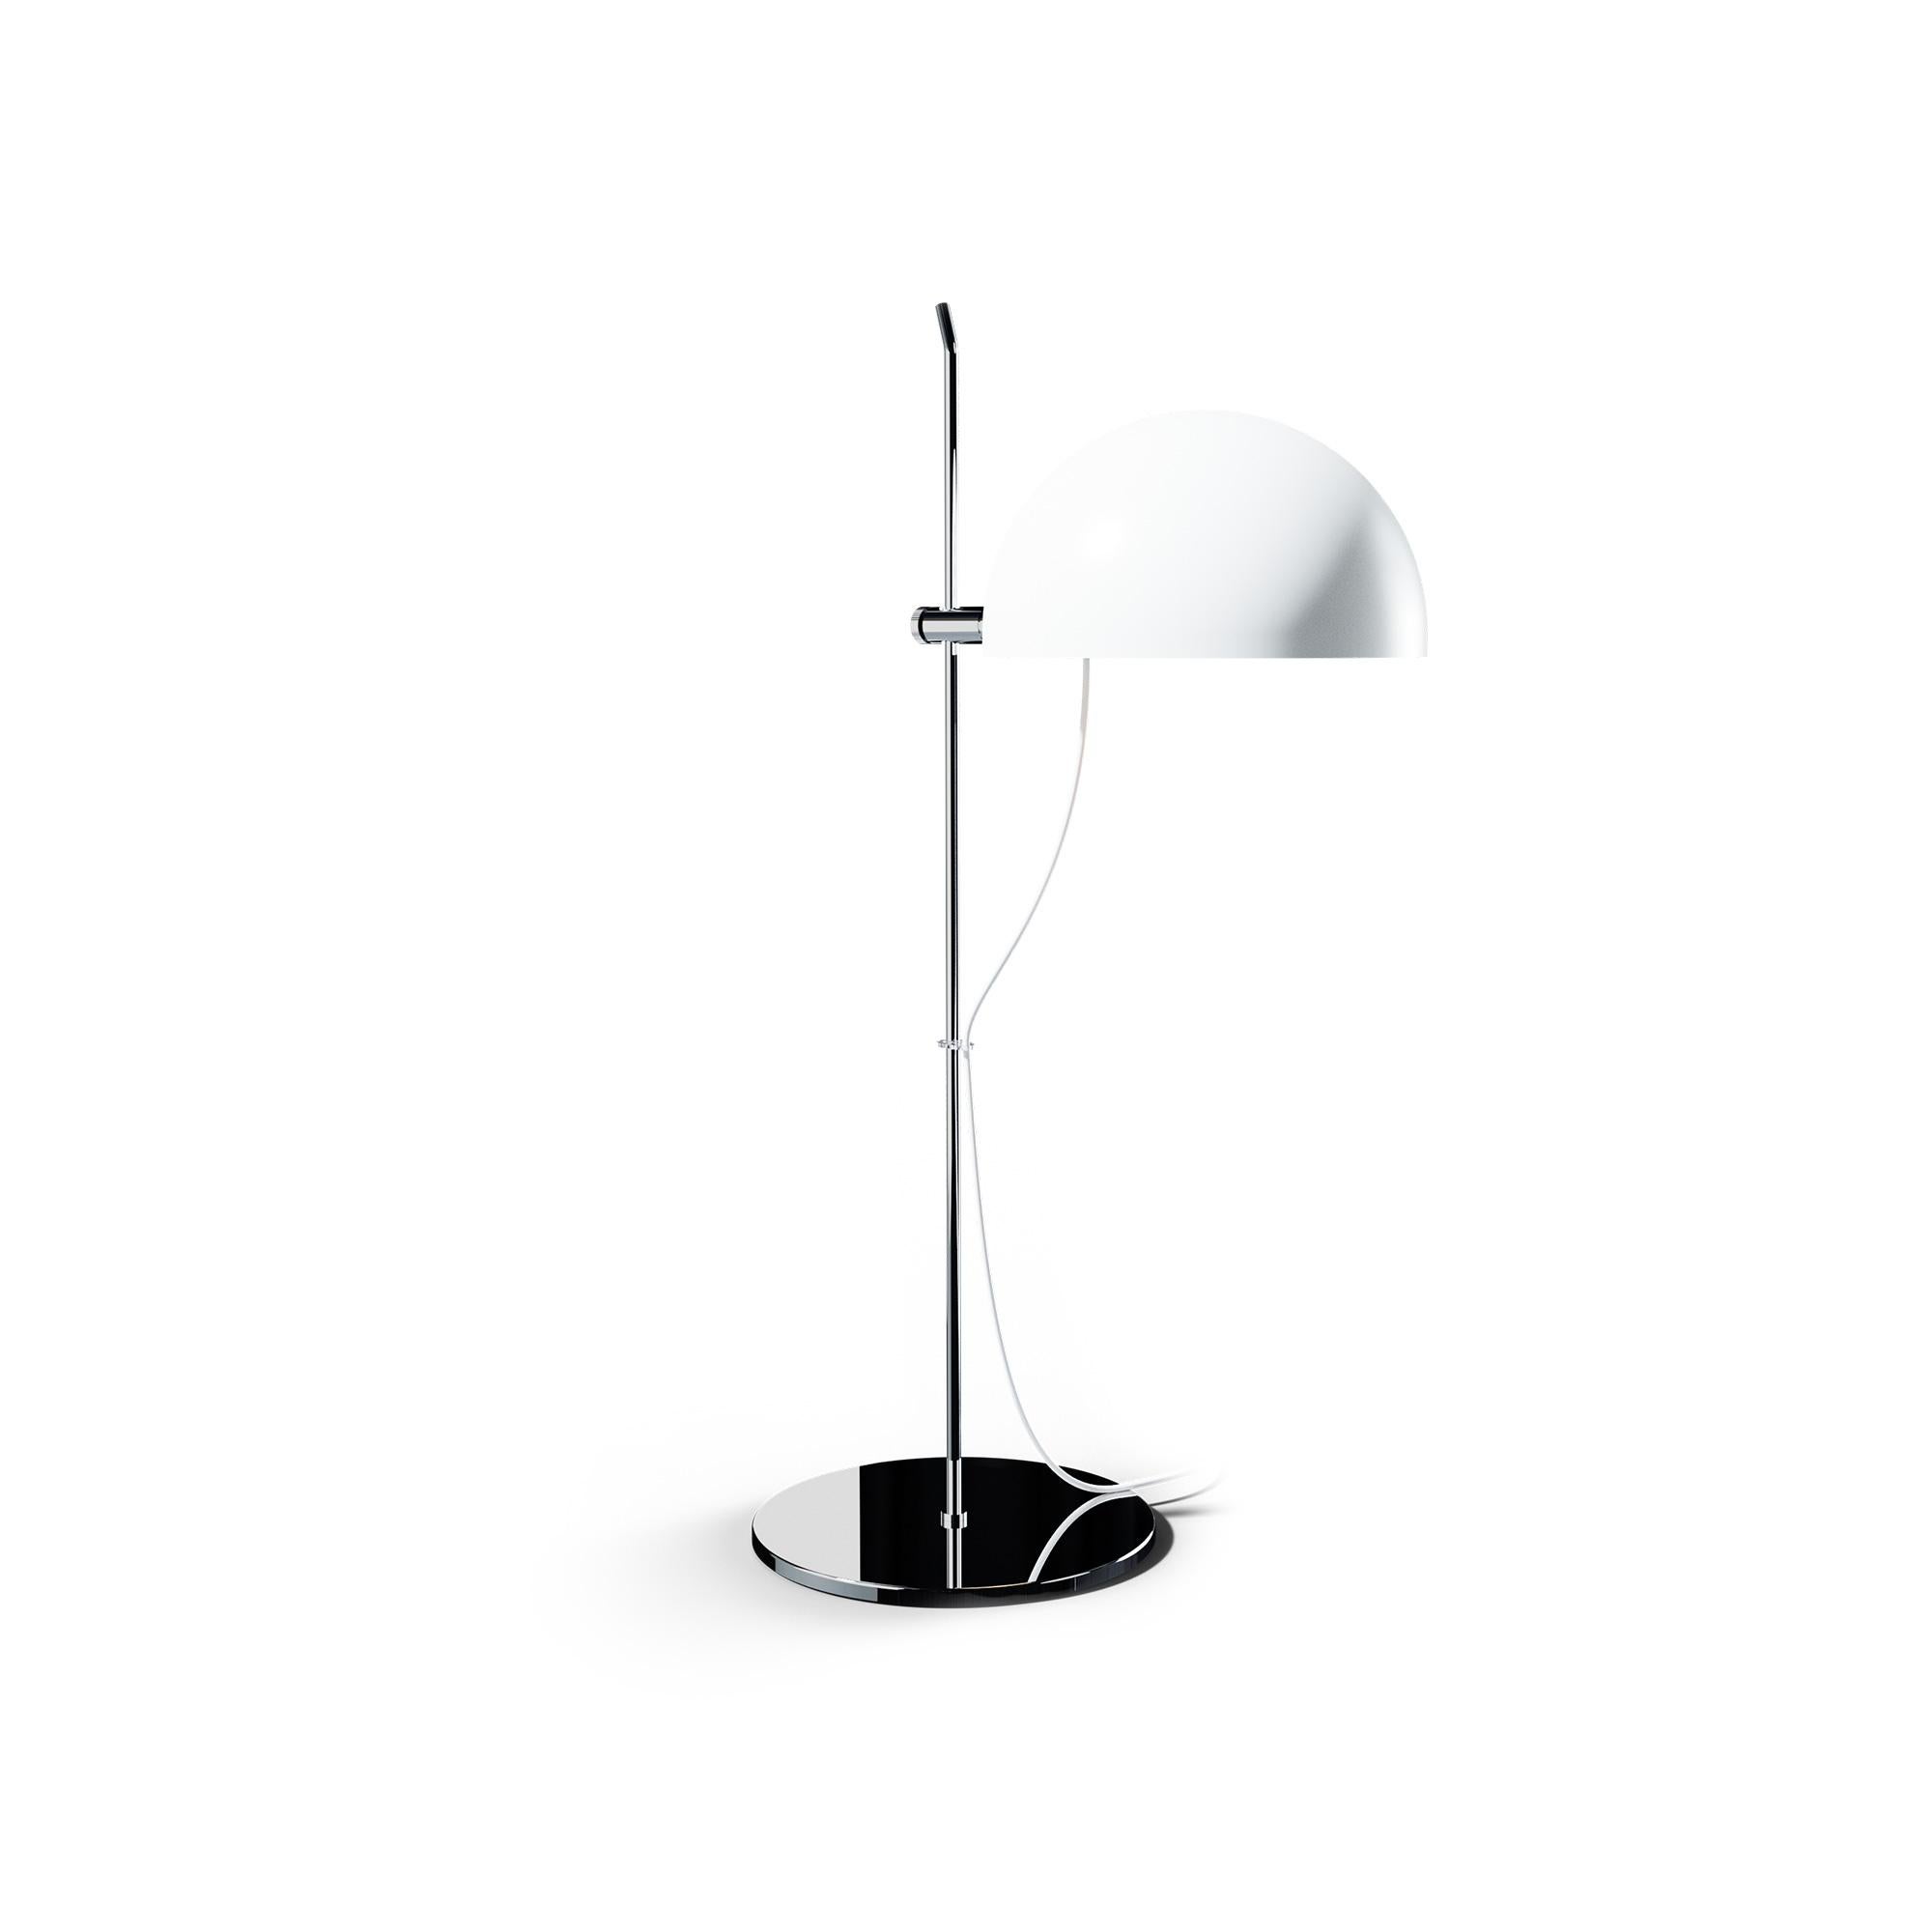 Alain Richard 'A21' Desk Lamp in Black for Disderot For Sale 1